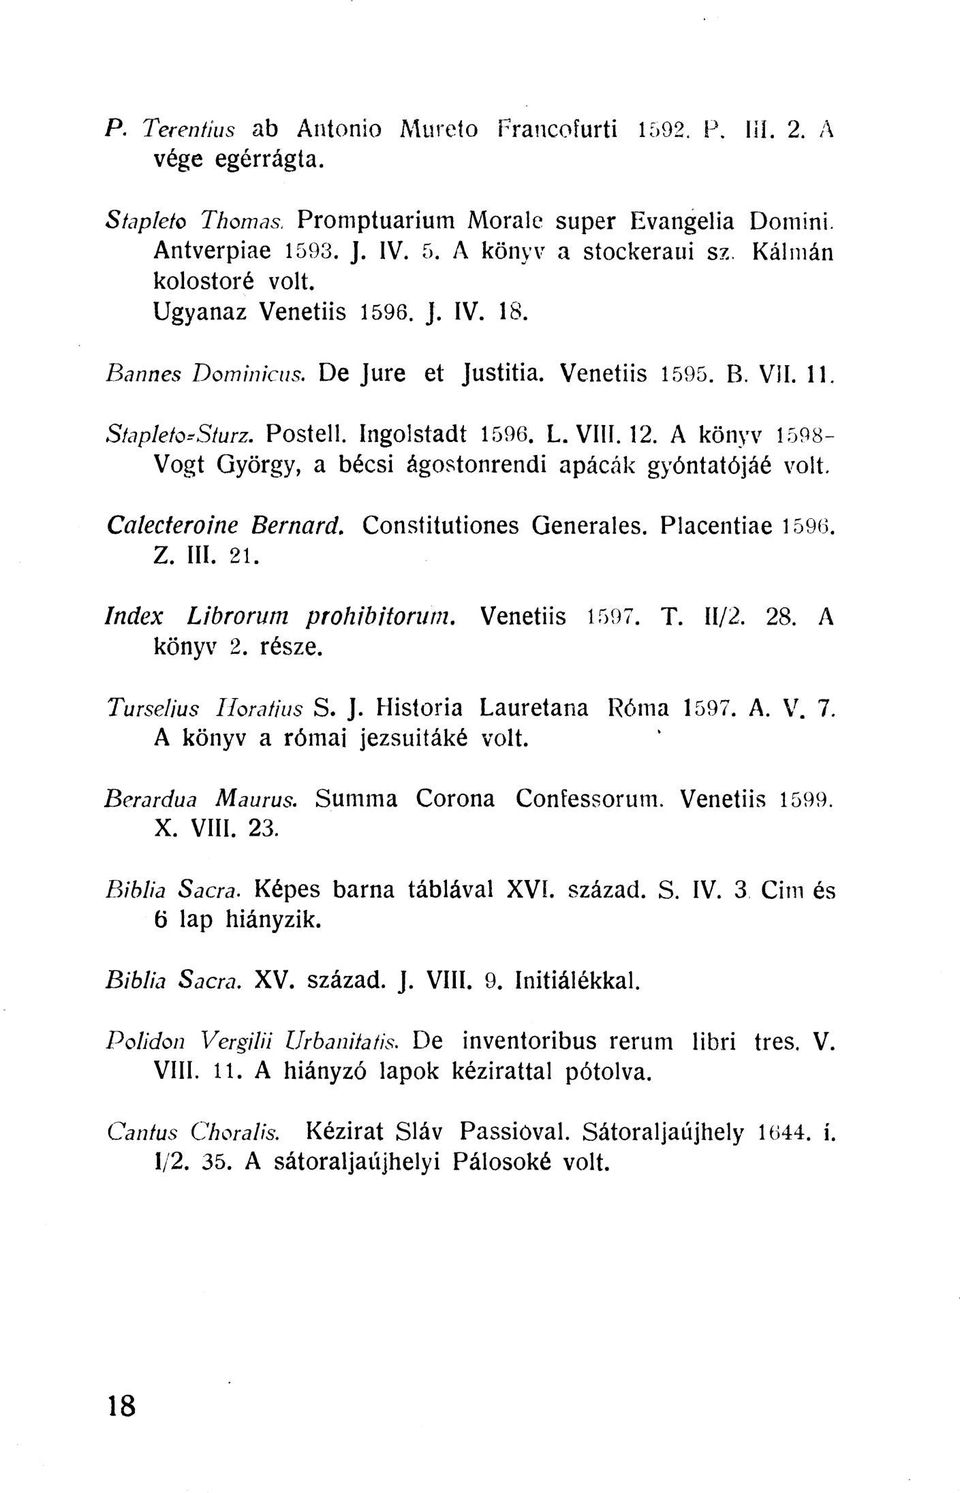 A könyv 1598- Vogt György, a bécsi ágostonrendi apácák gyóntatójáé volt. Calecteroine Bemard. Constitutiones Generales. Placentiae 1596. Z. III. 21. Index Librorum prohibitorum. Venetiis 1597. T.